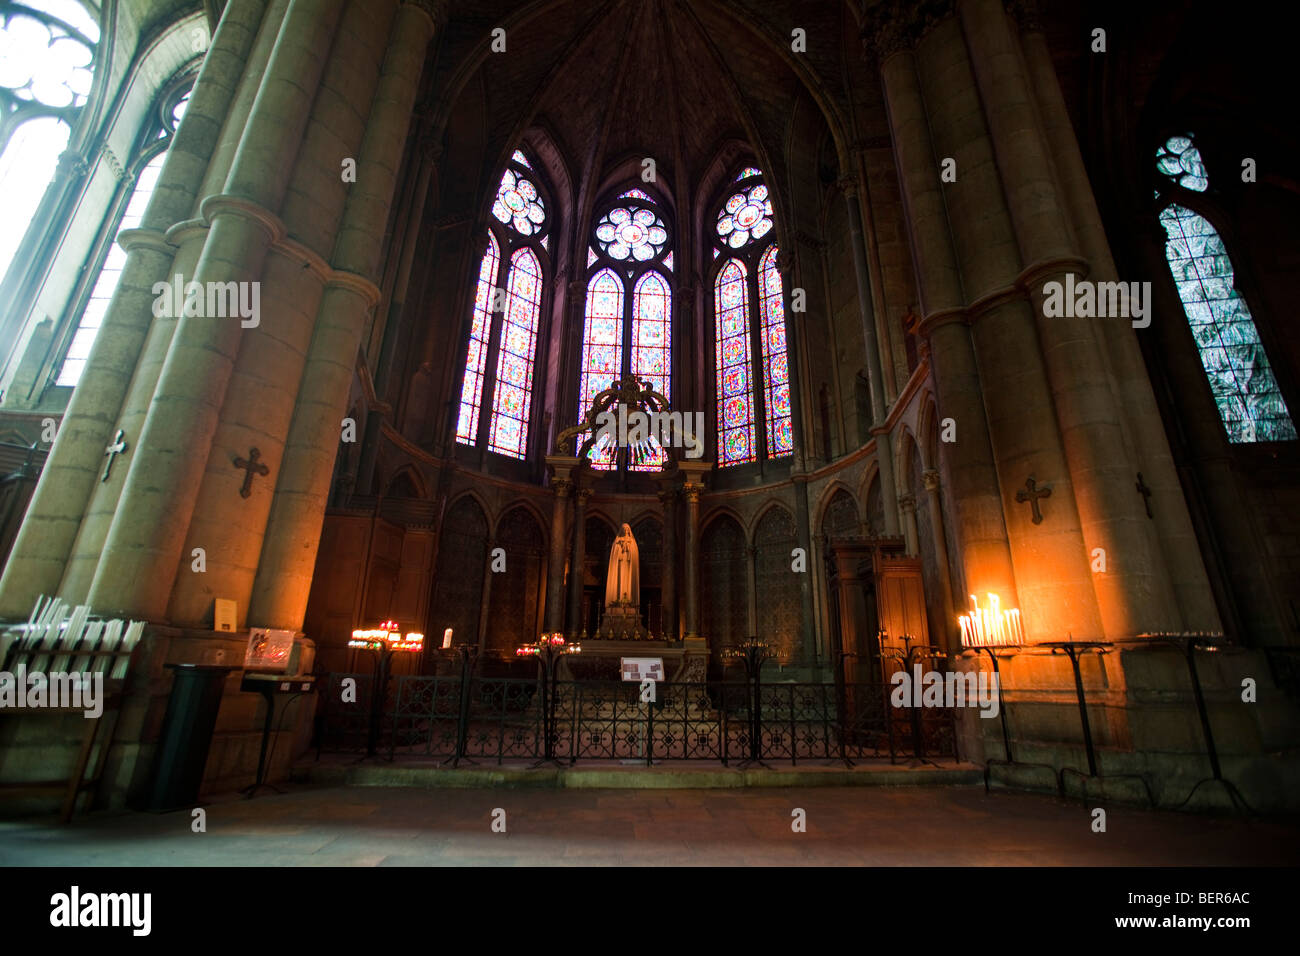 La Cathédrale de Reims (Cathédrale de Reims) avec intérieur vitrail Chagall en Champagne Ardenne Region France.098627 Reims Banque D'Images